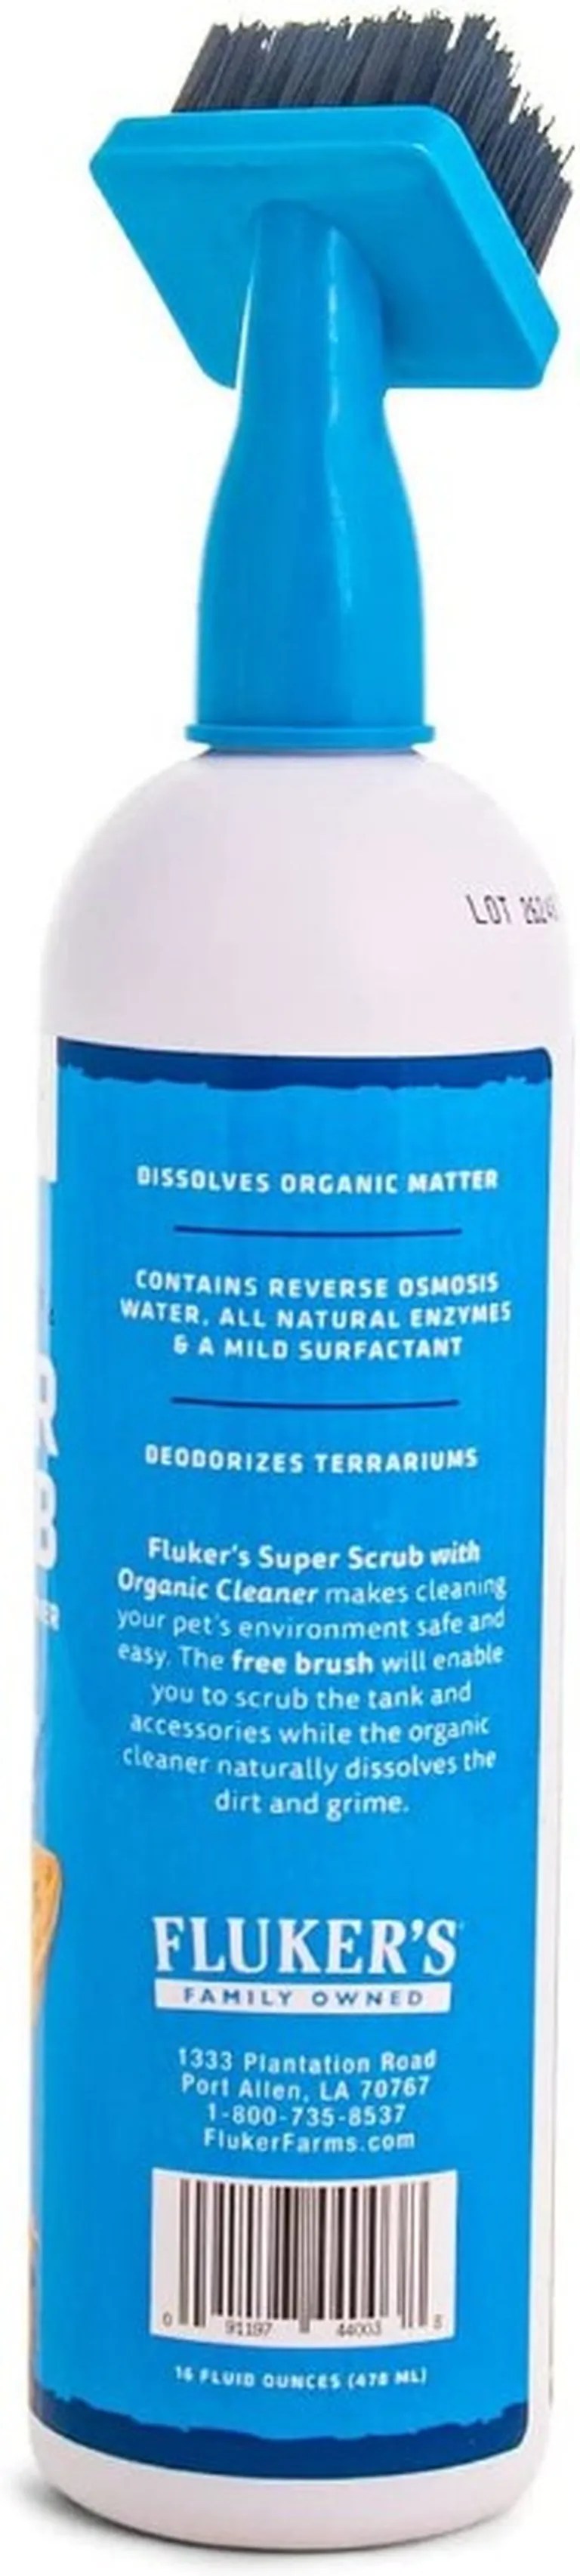 Flukers Super Scrub Brush Cleaner Photo 3